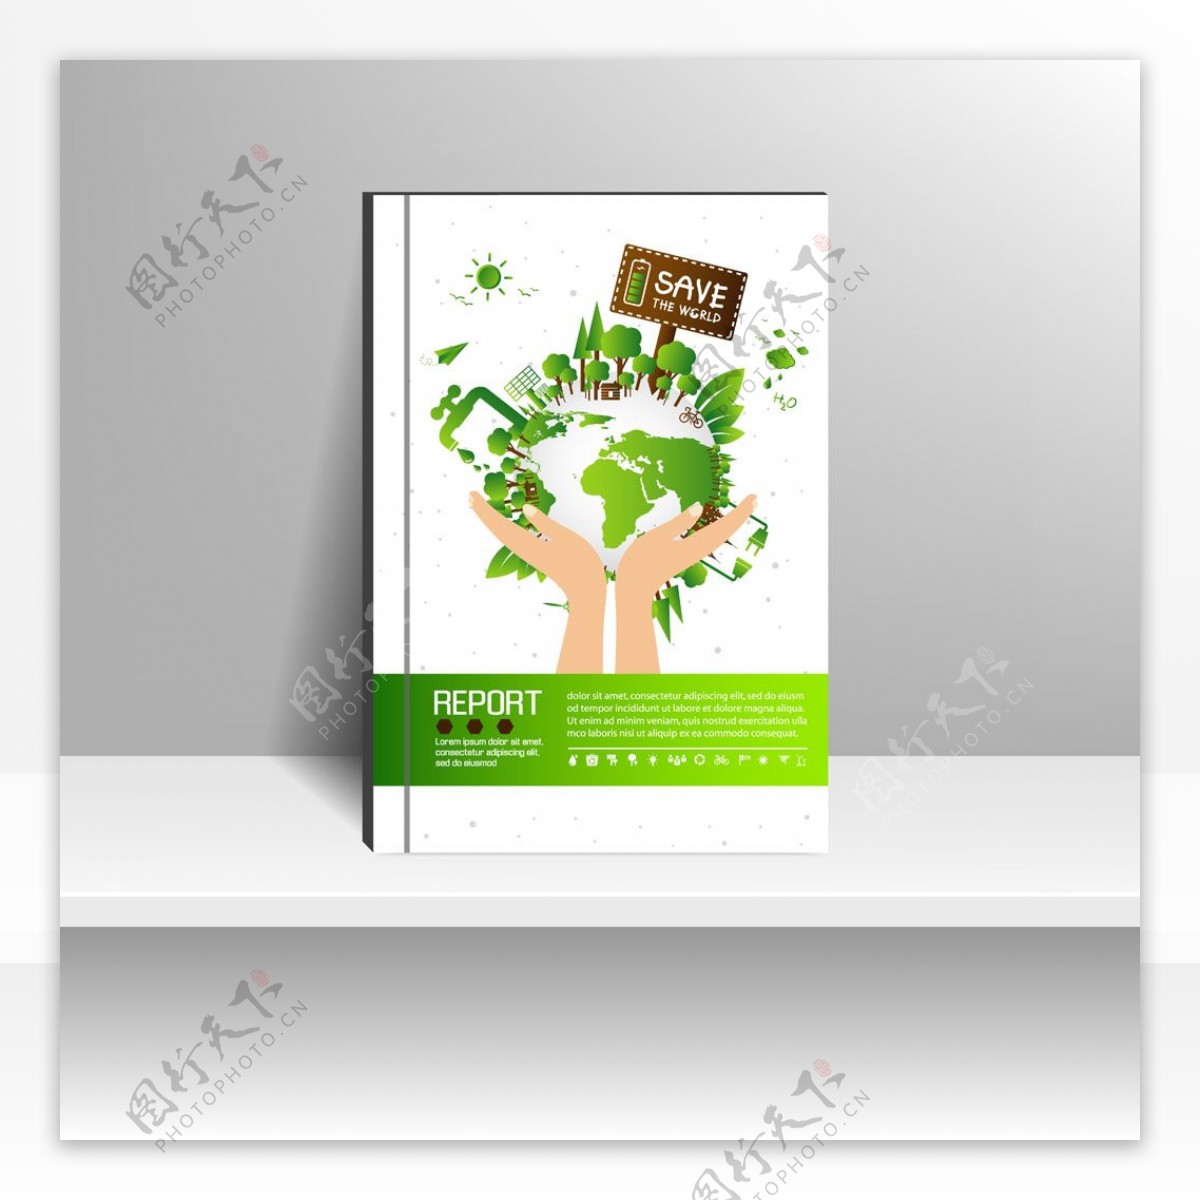 绿色环保海报模板下载